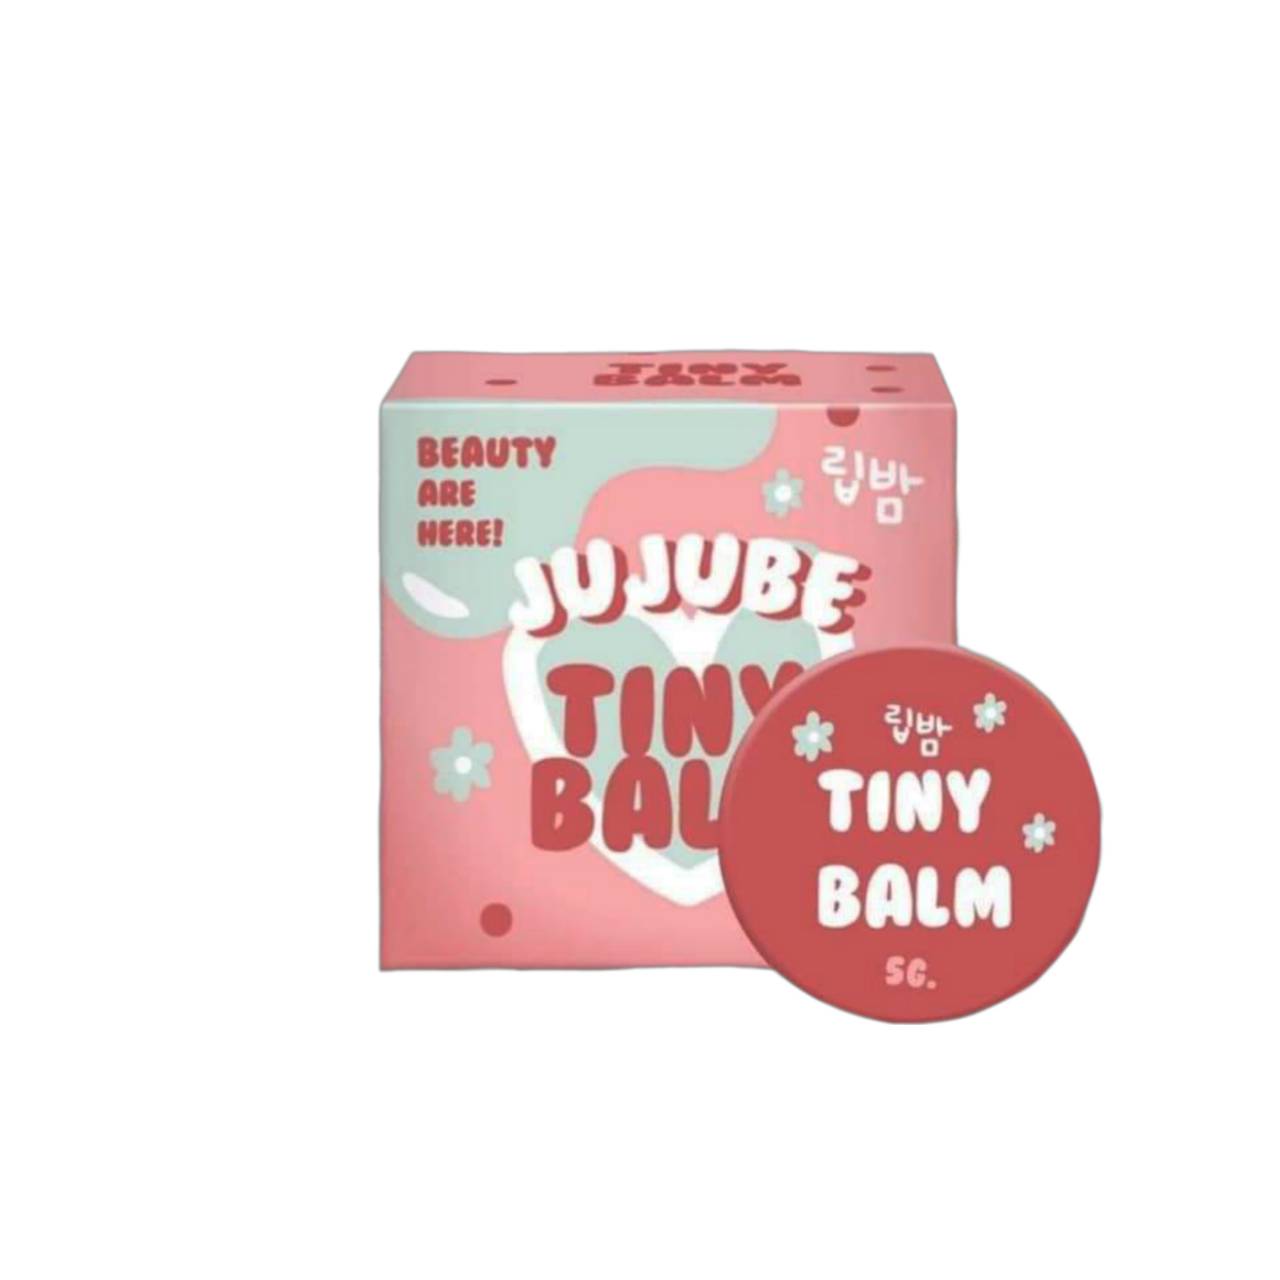 TinyBalm By Jujube ไทนี่บาล์ม ลิปแก้ปากดำ 50g(1 ตลับ)